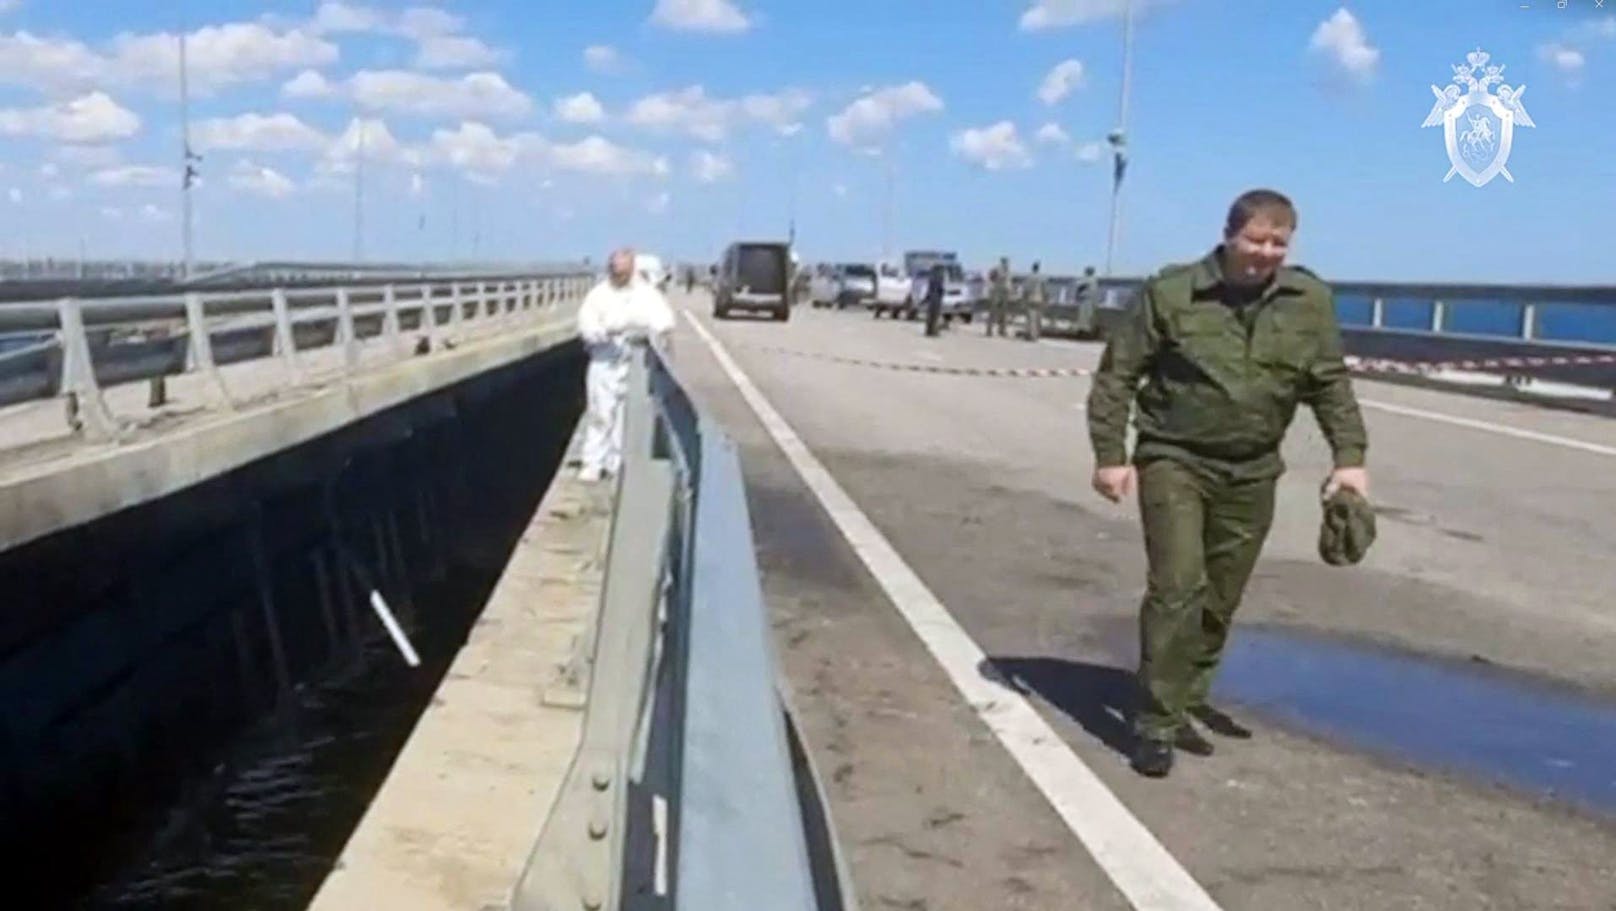 "Alle Beteiligten gehen davon aus, dass die Ukraine die Krim-Brücke beschossen hat", berichtete ORF-Korrespondent <a data-li-document-ref="100224256" href="https://www.heute.at/g/-100224256">Christian Wehrschütz</a> unmittelbar danach.